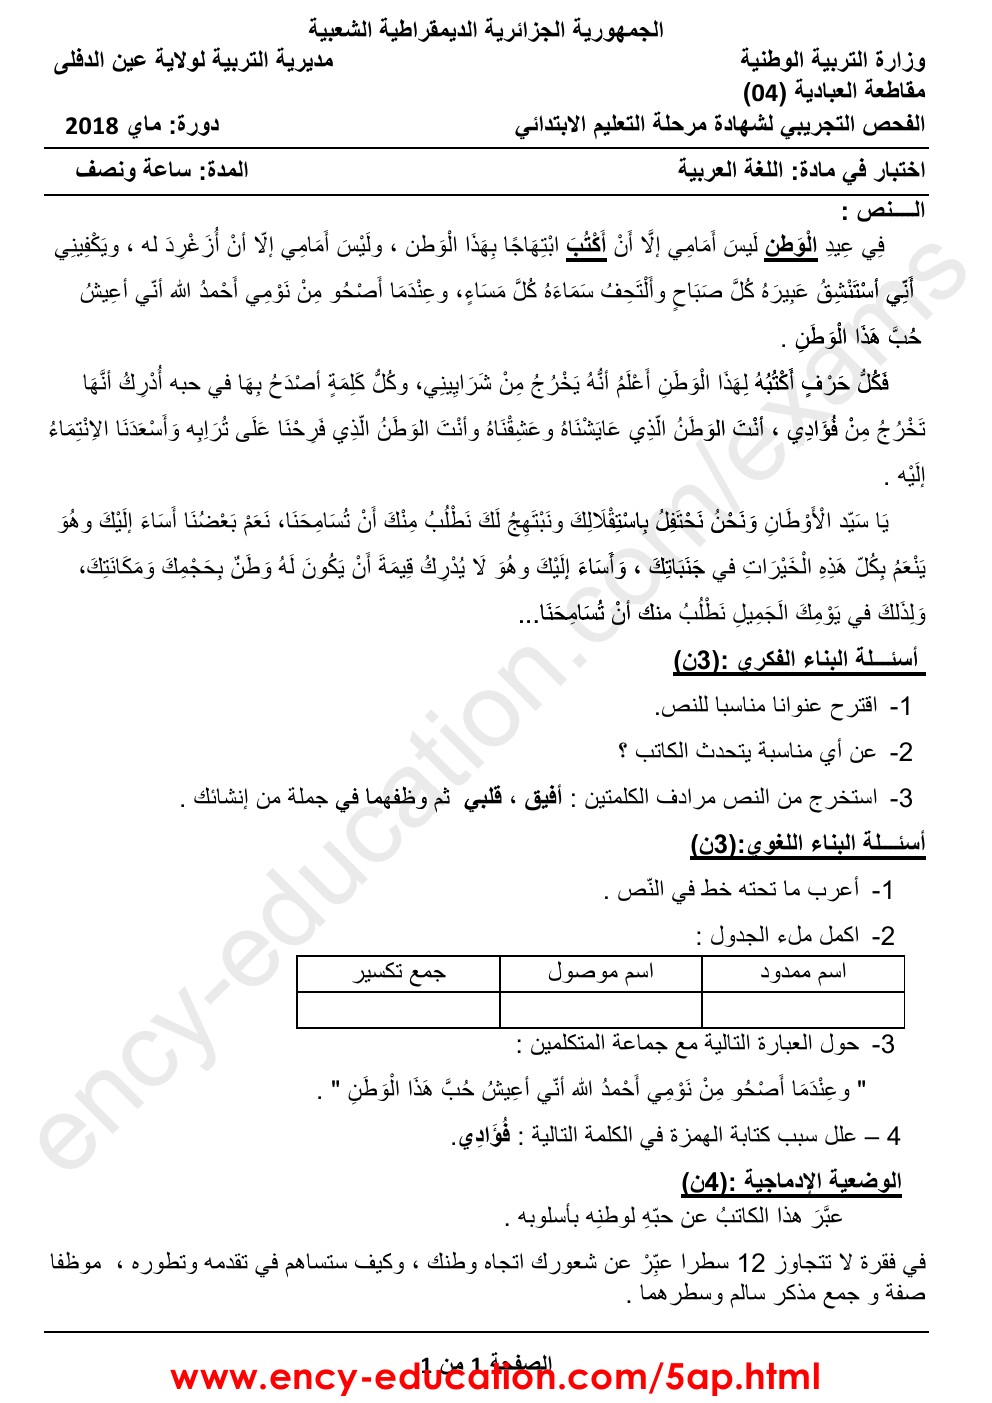 اختبارات الفصل الثالث لغة عربية الجيل الثاني الخامسة ابتدائي 0001122